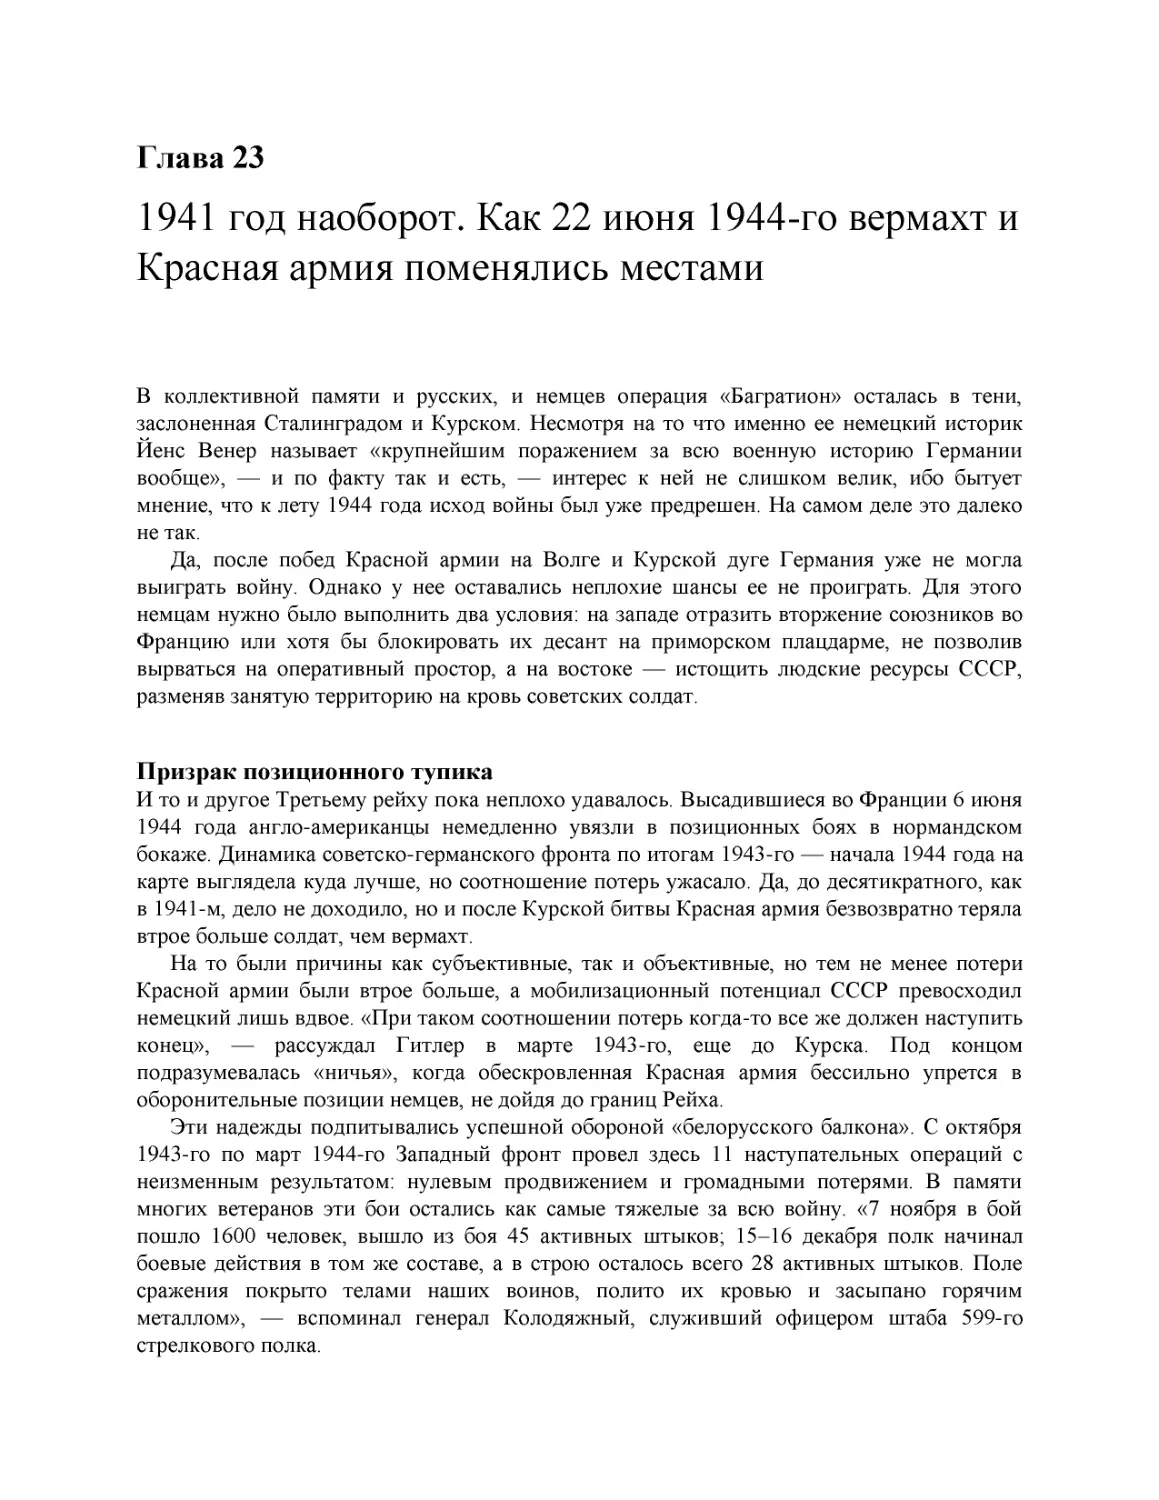 1941 год наоборот. Как 22 июня 1944-го вермахт и Красная армия поменялись местами
Призрак позиционного тупика